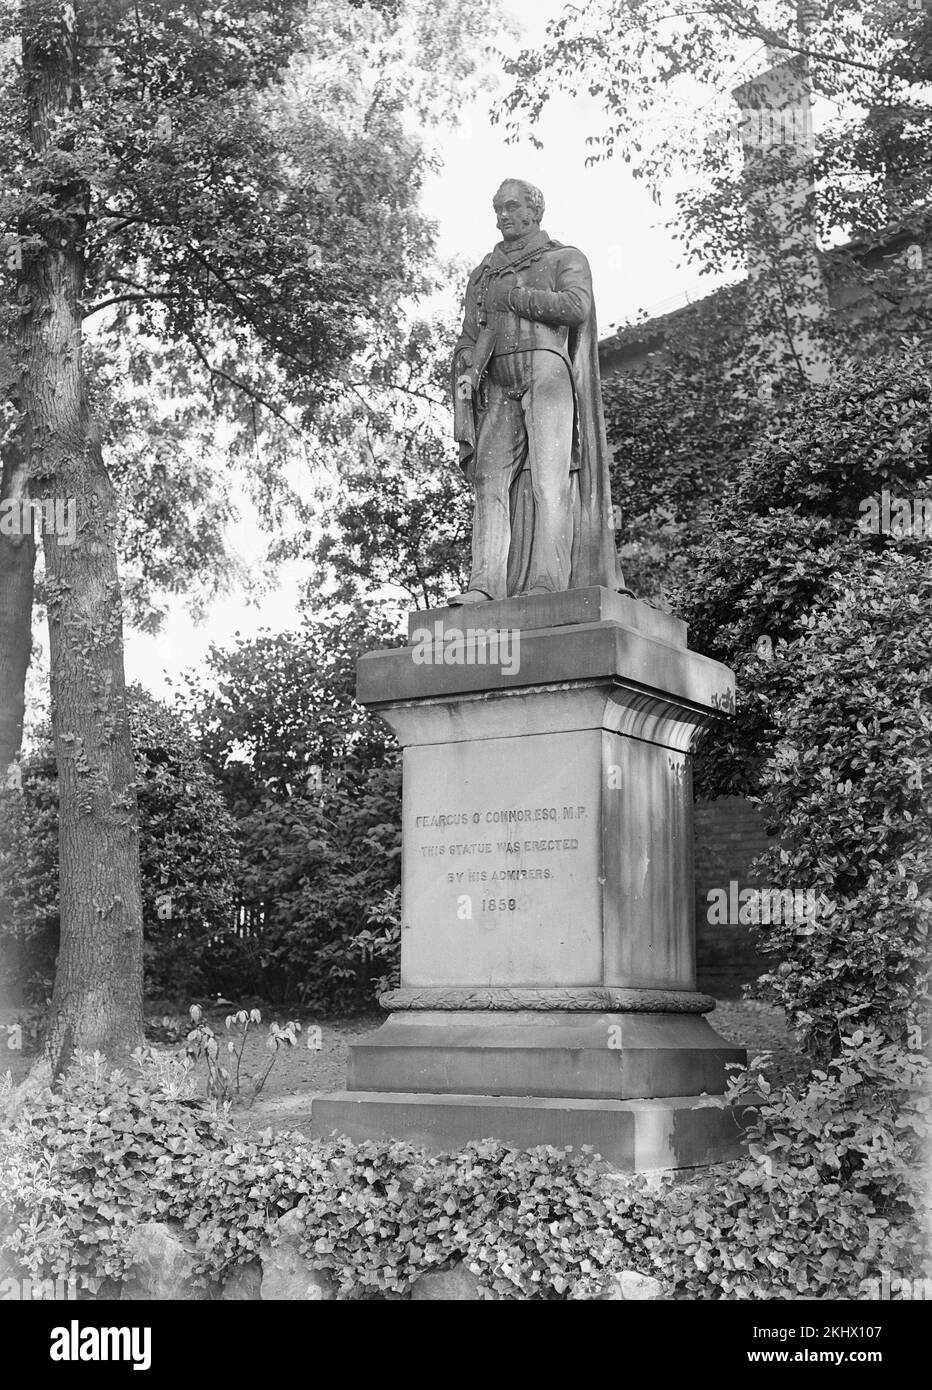 Una fotografia in bianco e nero del tardo Vittoriano che mostra la statua del Chartist Feargus o'Connor nell'Arboreto di Nottingham. Foto Stock